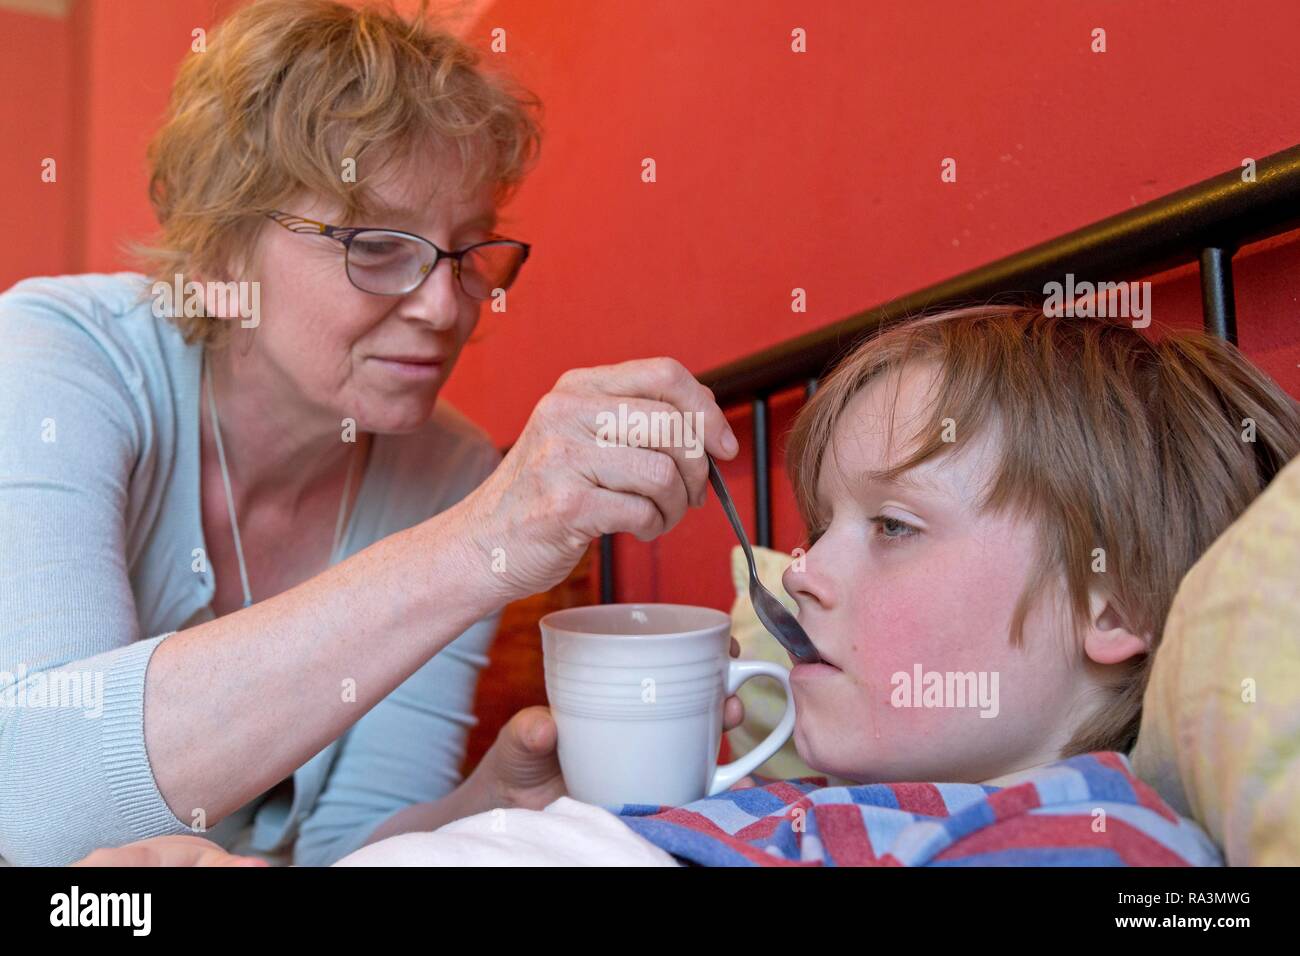 Die Mutter kümmert sich um die kranken Sohn im Bett, Symbol, Bild, kalt, Pflege, Eltern, Kindheit, Deutschland Stockfoto